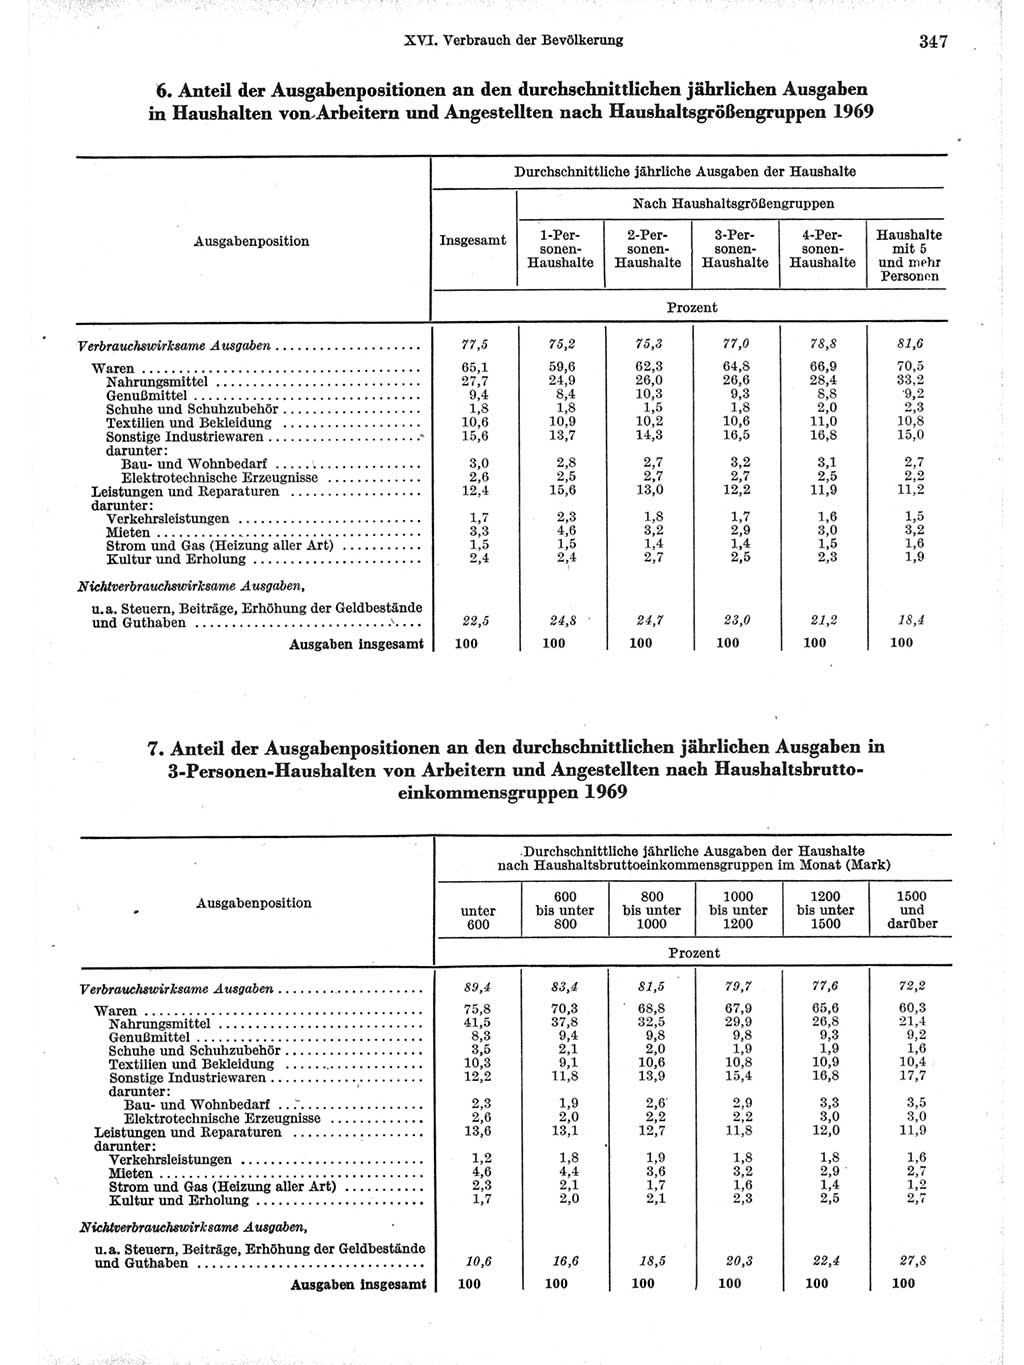 Statistisches Jahrbuch der Deutschen Demokratischen Republik (DDR) 1971, Seite 347 (Stat. Jb. DDR 1971, S. 347)